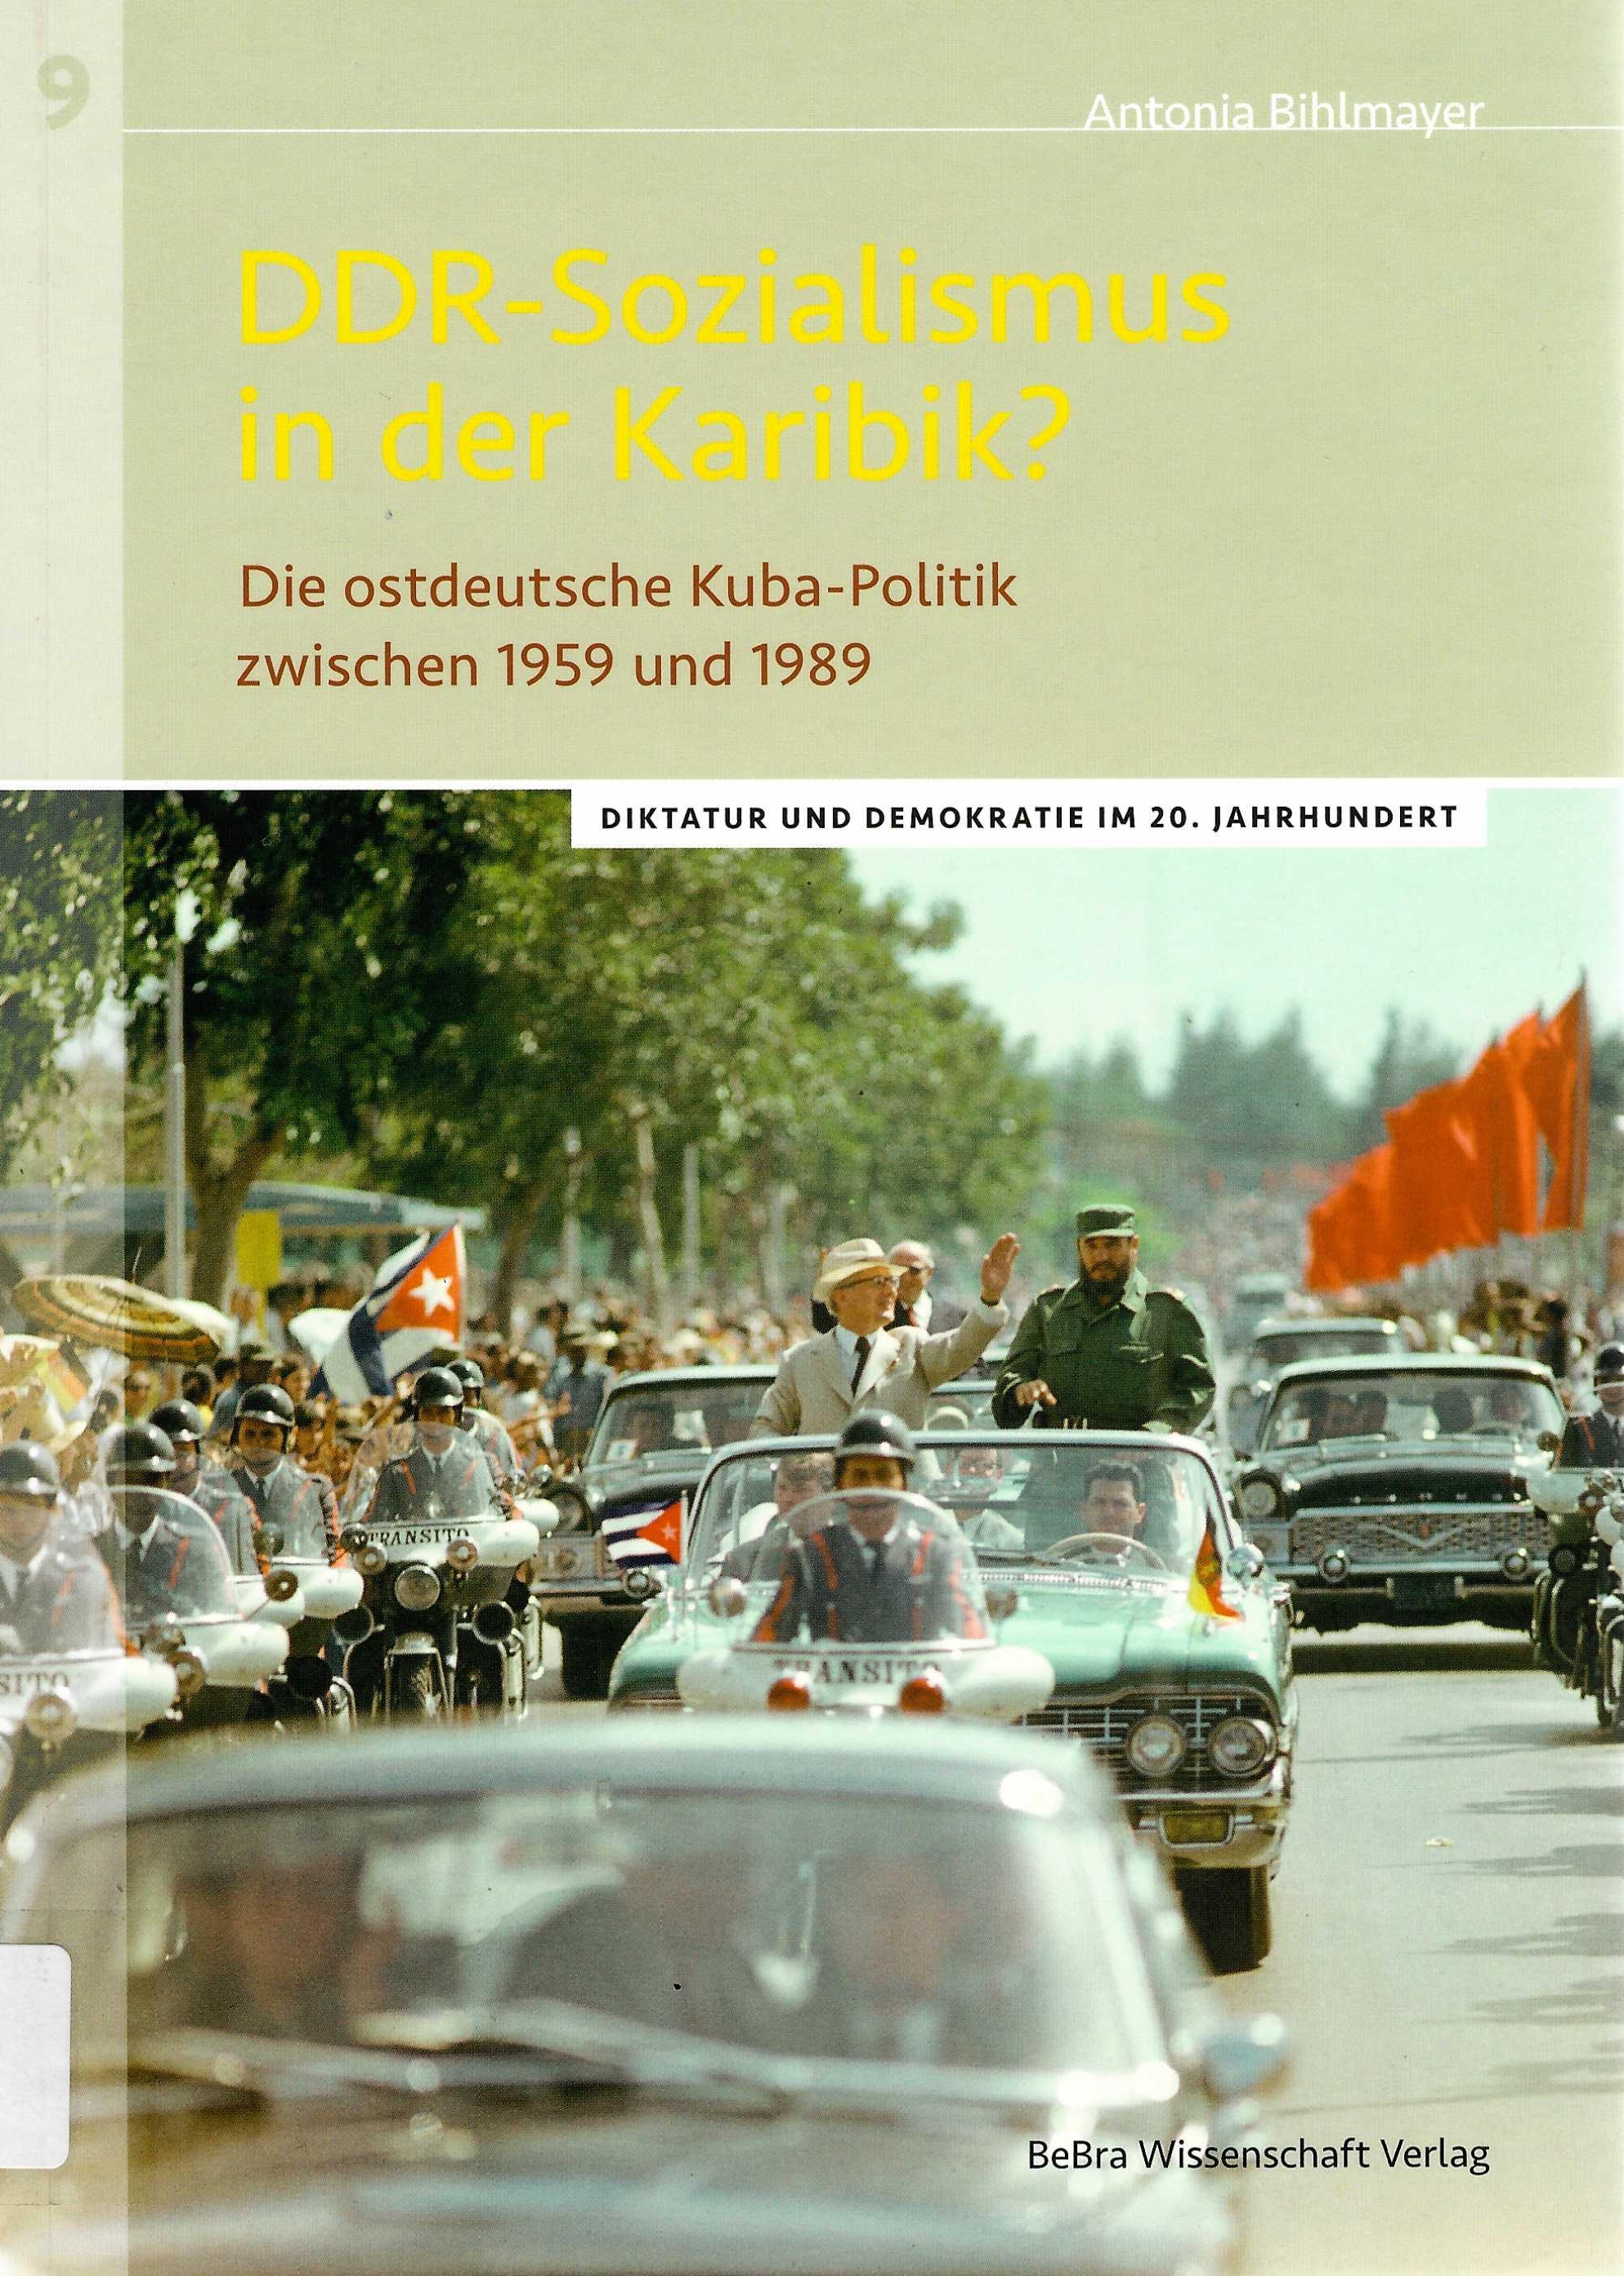 Auf dem Buchcover ist unter dem Titel im unteren Drittel des Buches ein historische Farbfoto abgebildet. Zu sehen ist Erich Honecker bei einem Staatsbesuch auf Kuba wie er aus einem Autokorso fröhlich in die Menge winkt.